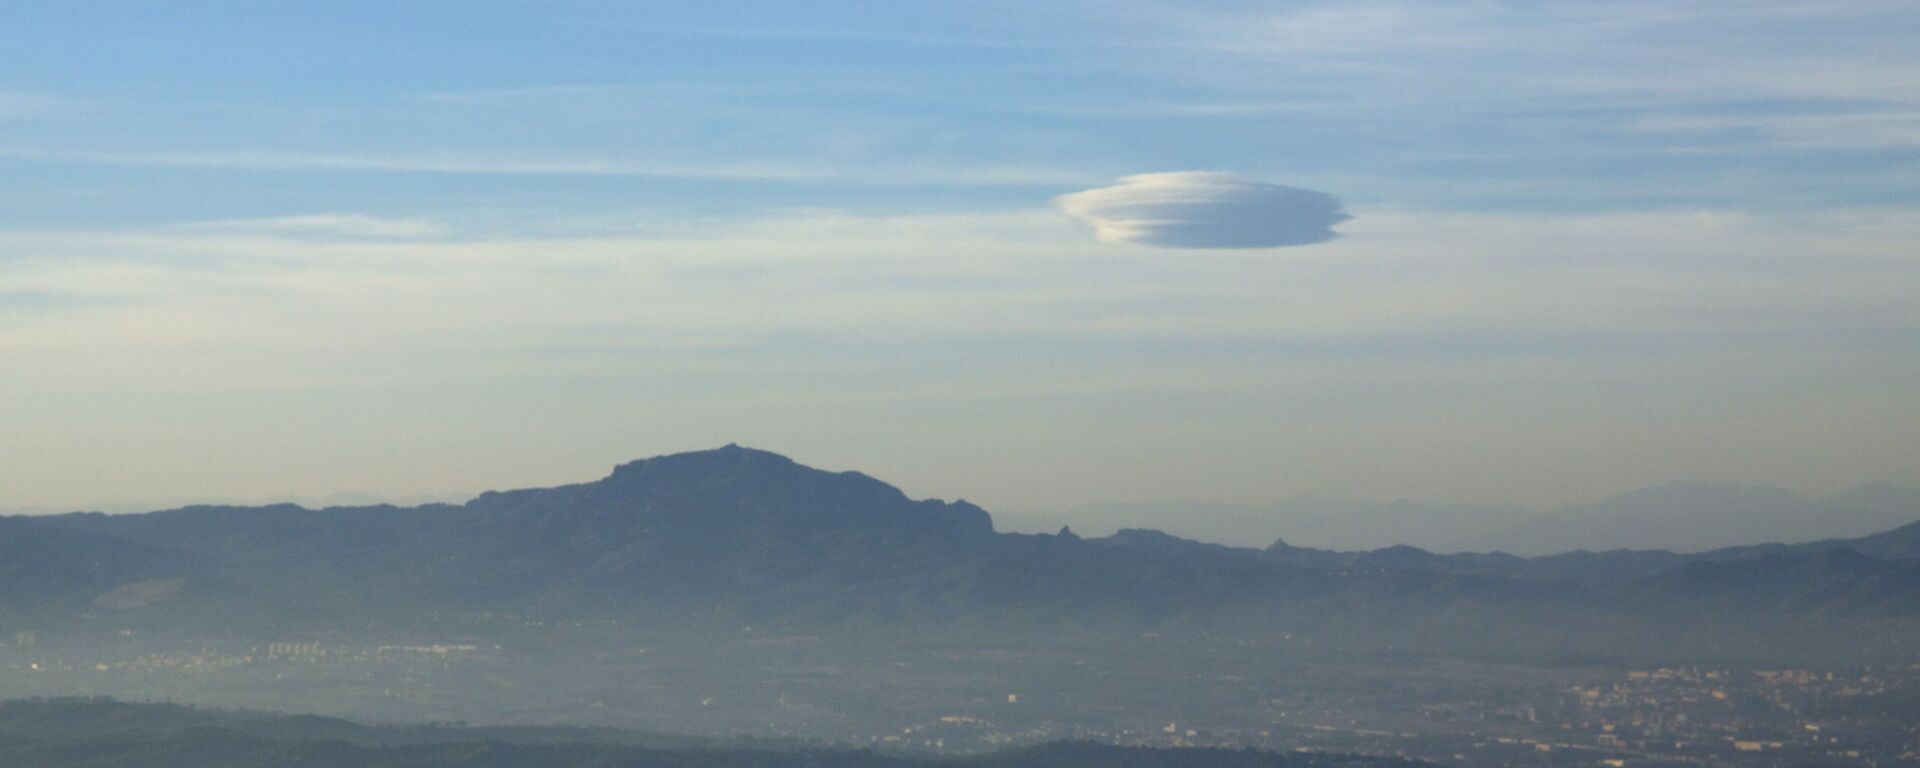 Nuvem lenticular que é muitas vezes confundida com OVNI - Sputnik Brasil, 1920, 13.08.2021